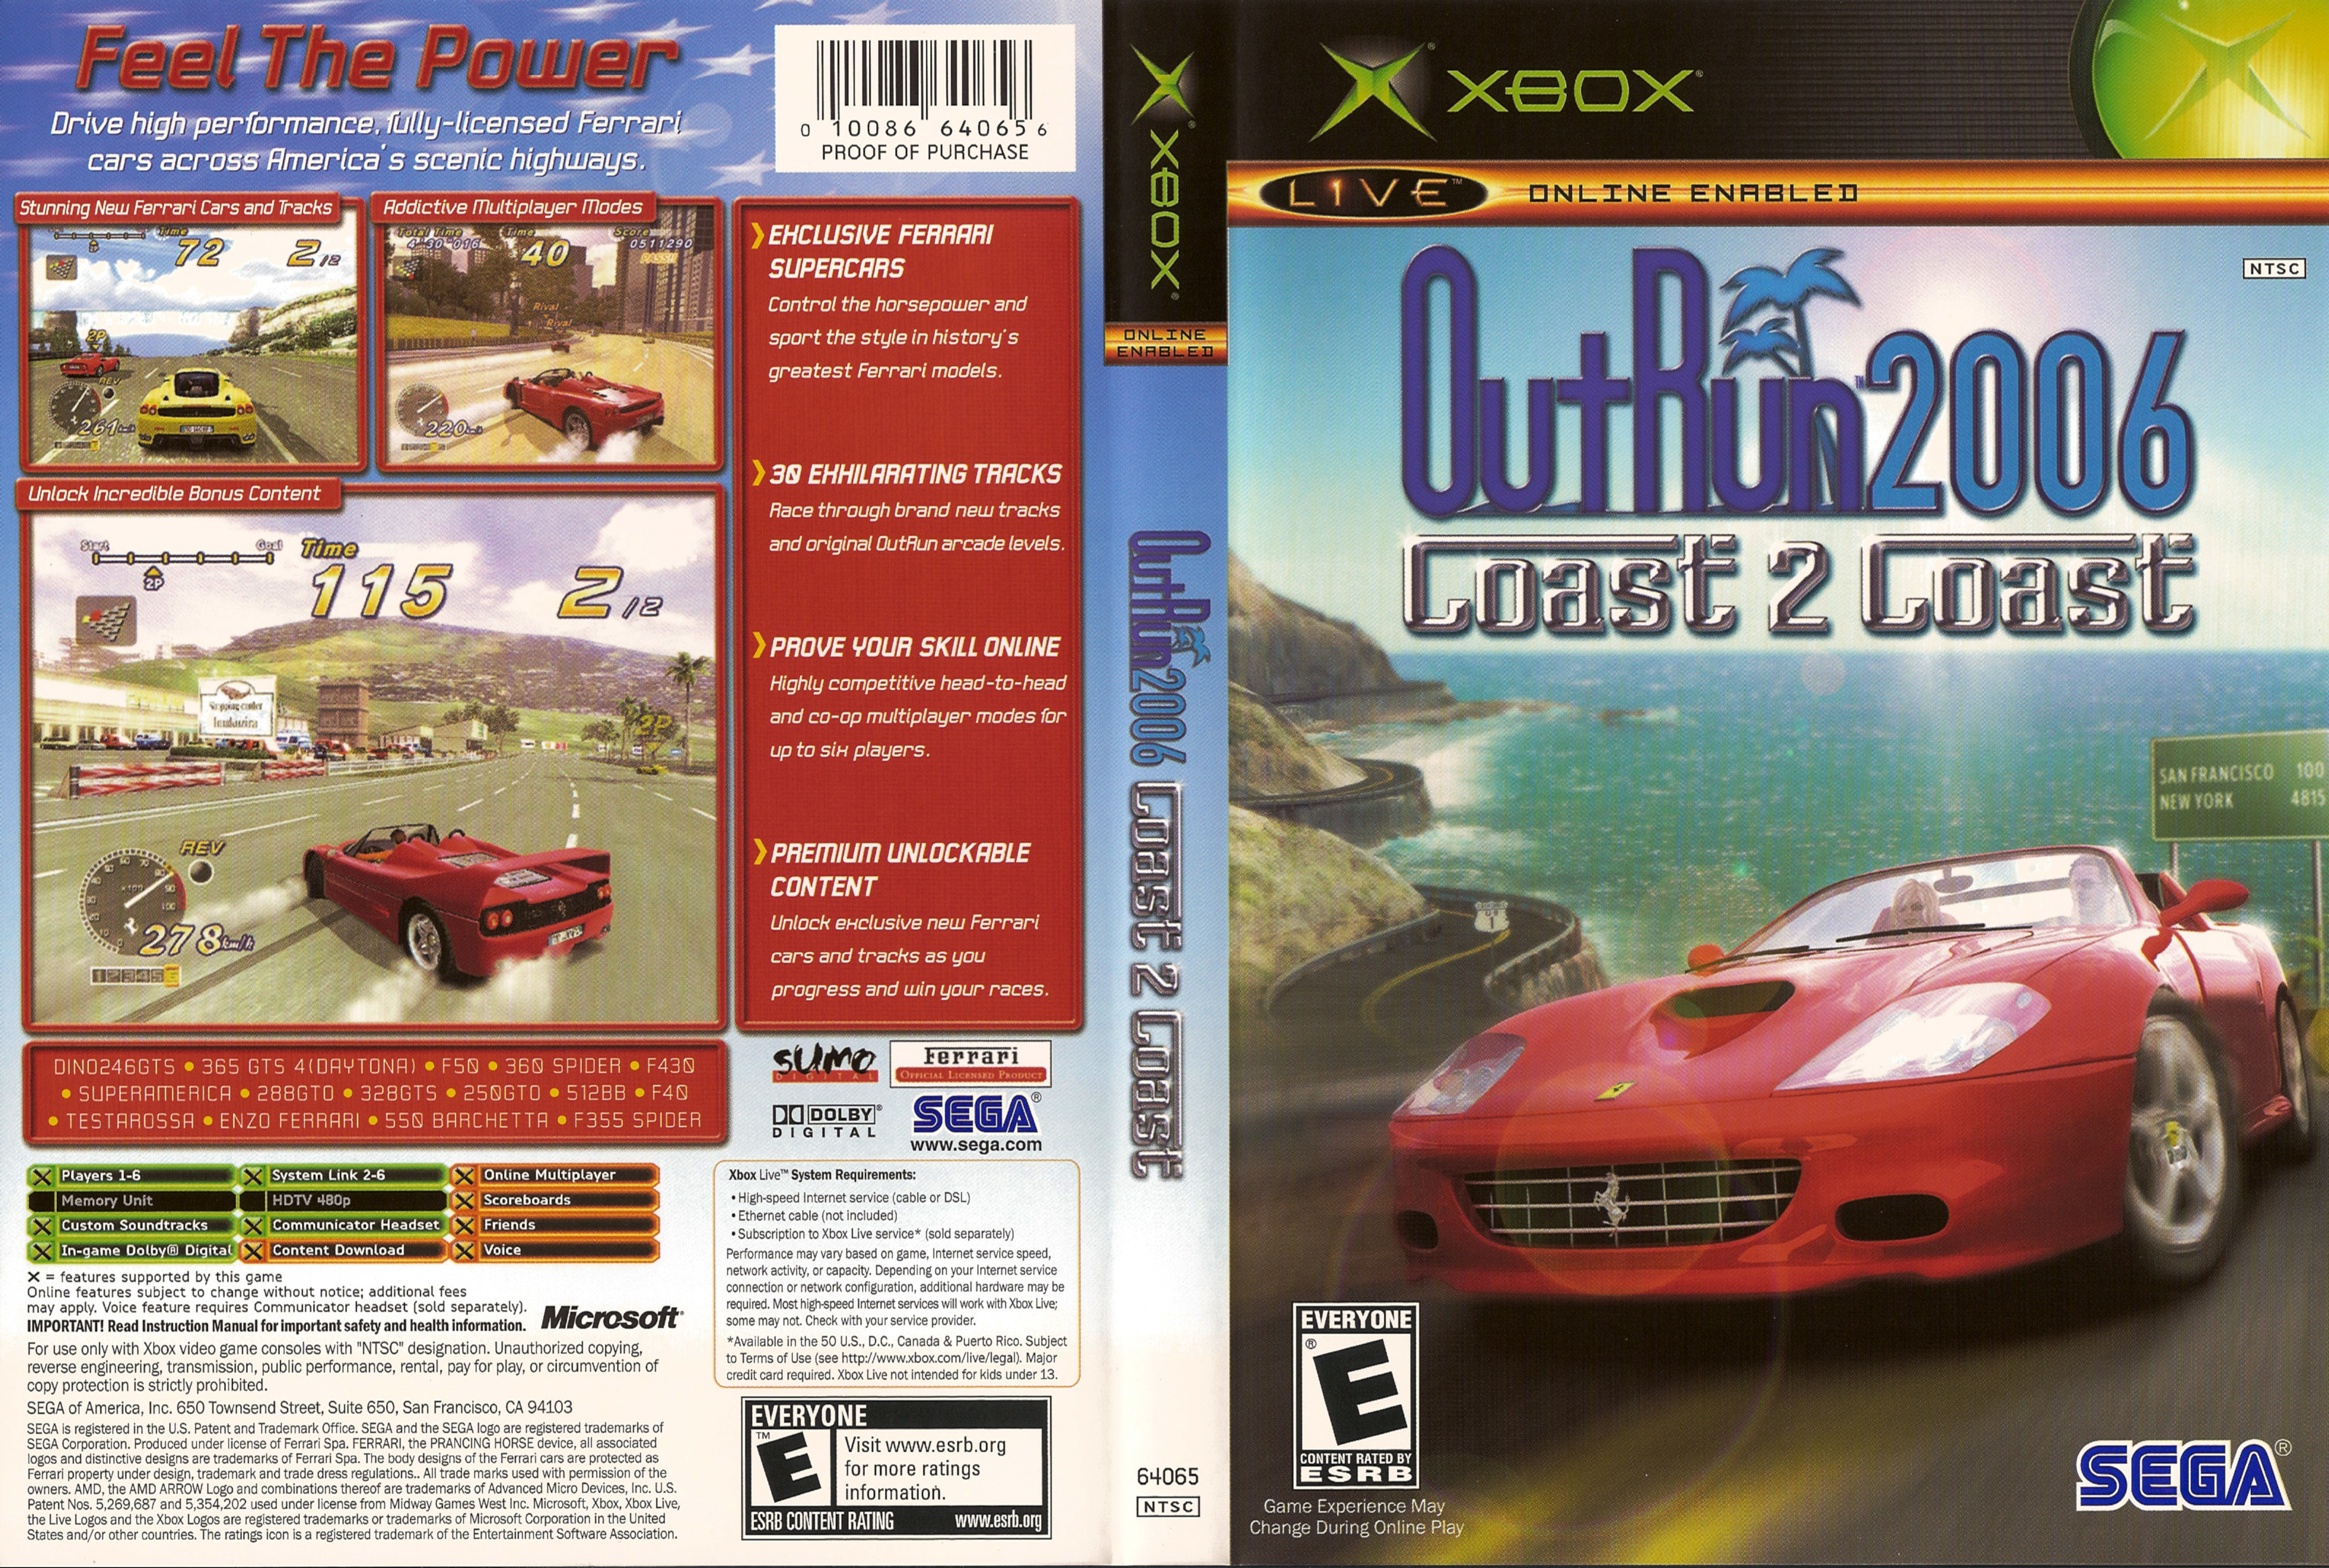 Outrun 2006 coast. Outrun 2006 Coast 2 Coast Xbox. Outrun 2006: Coast to Coast. Outrun 2006 Coast 2 Coast обложка. Xbox Original 2006.